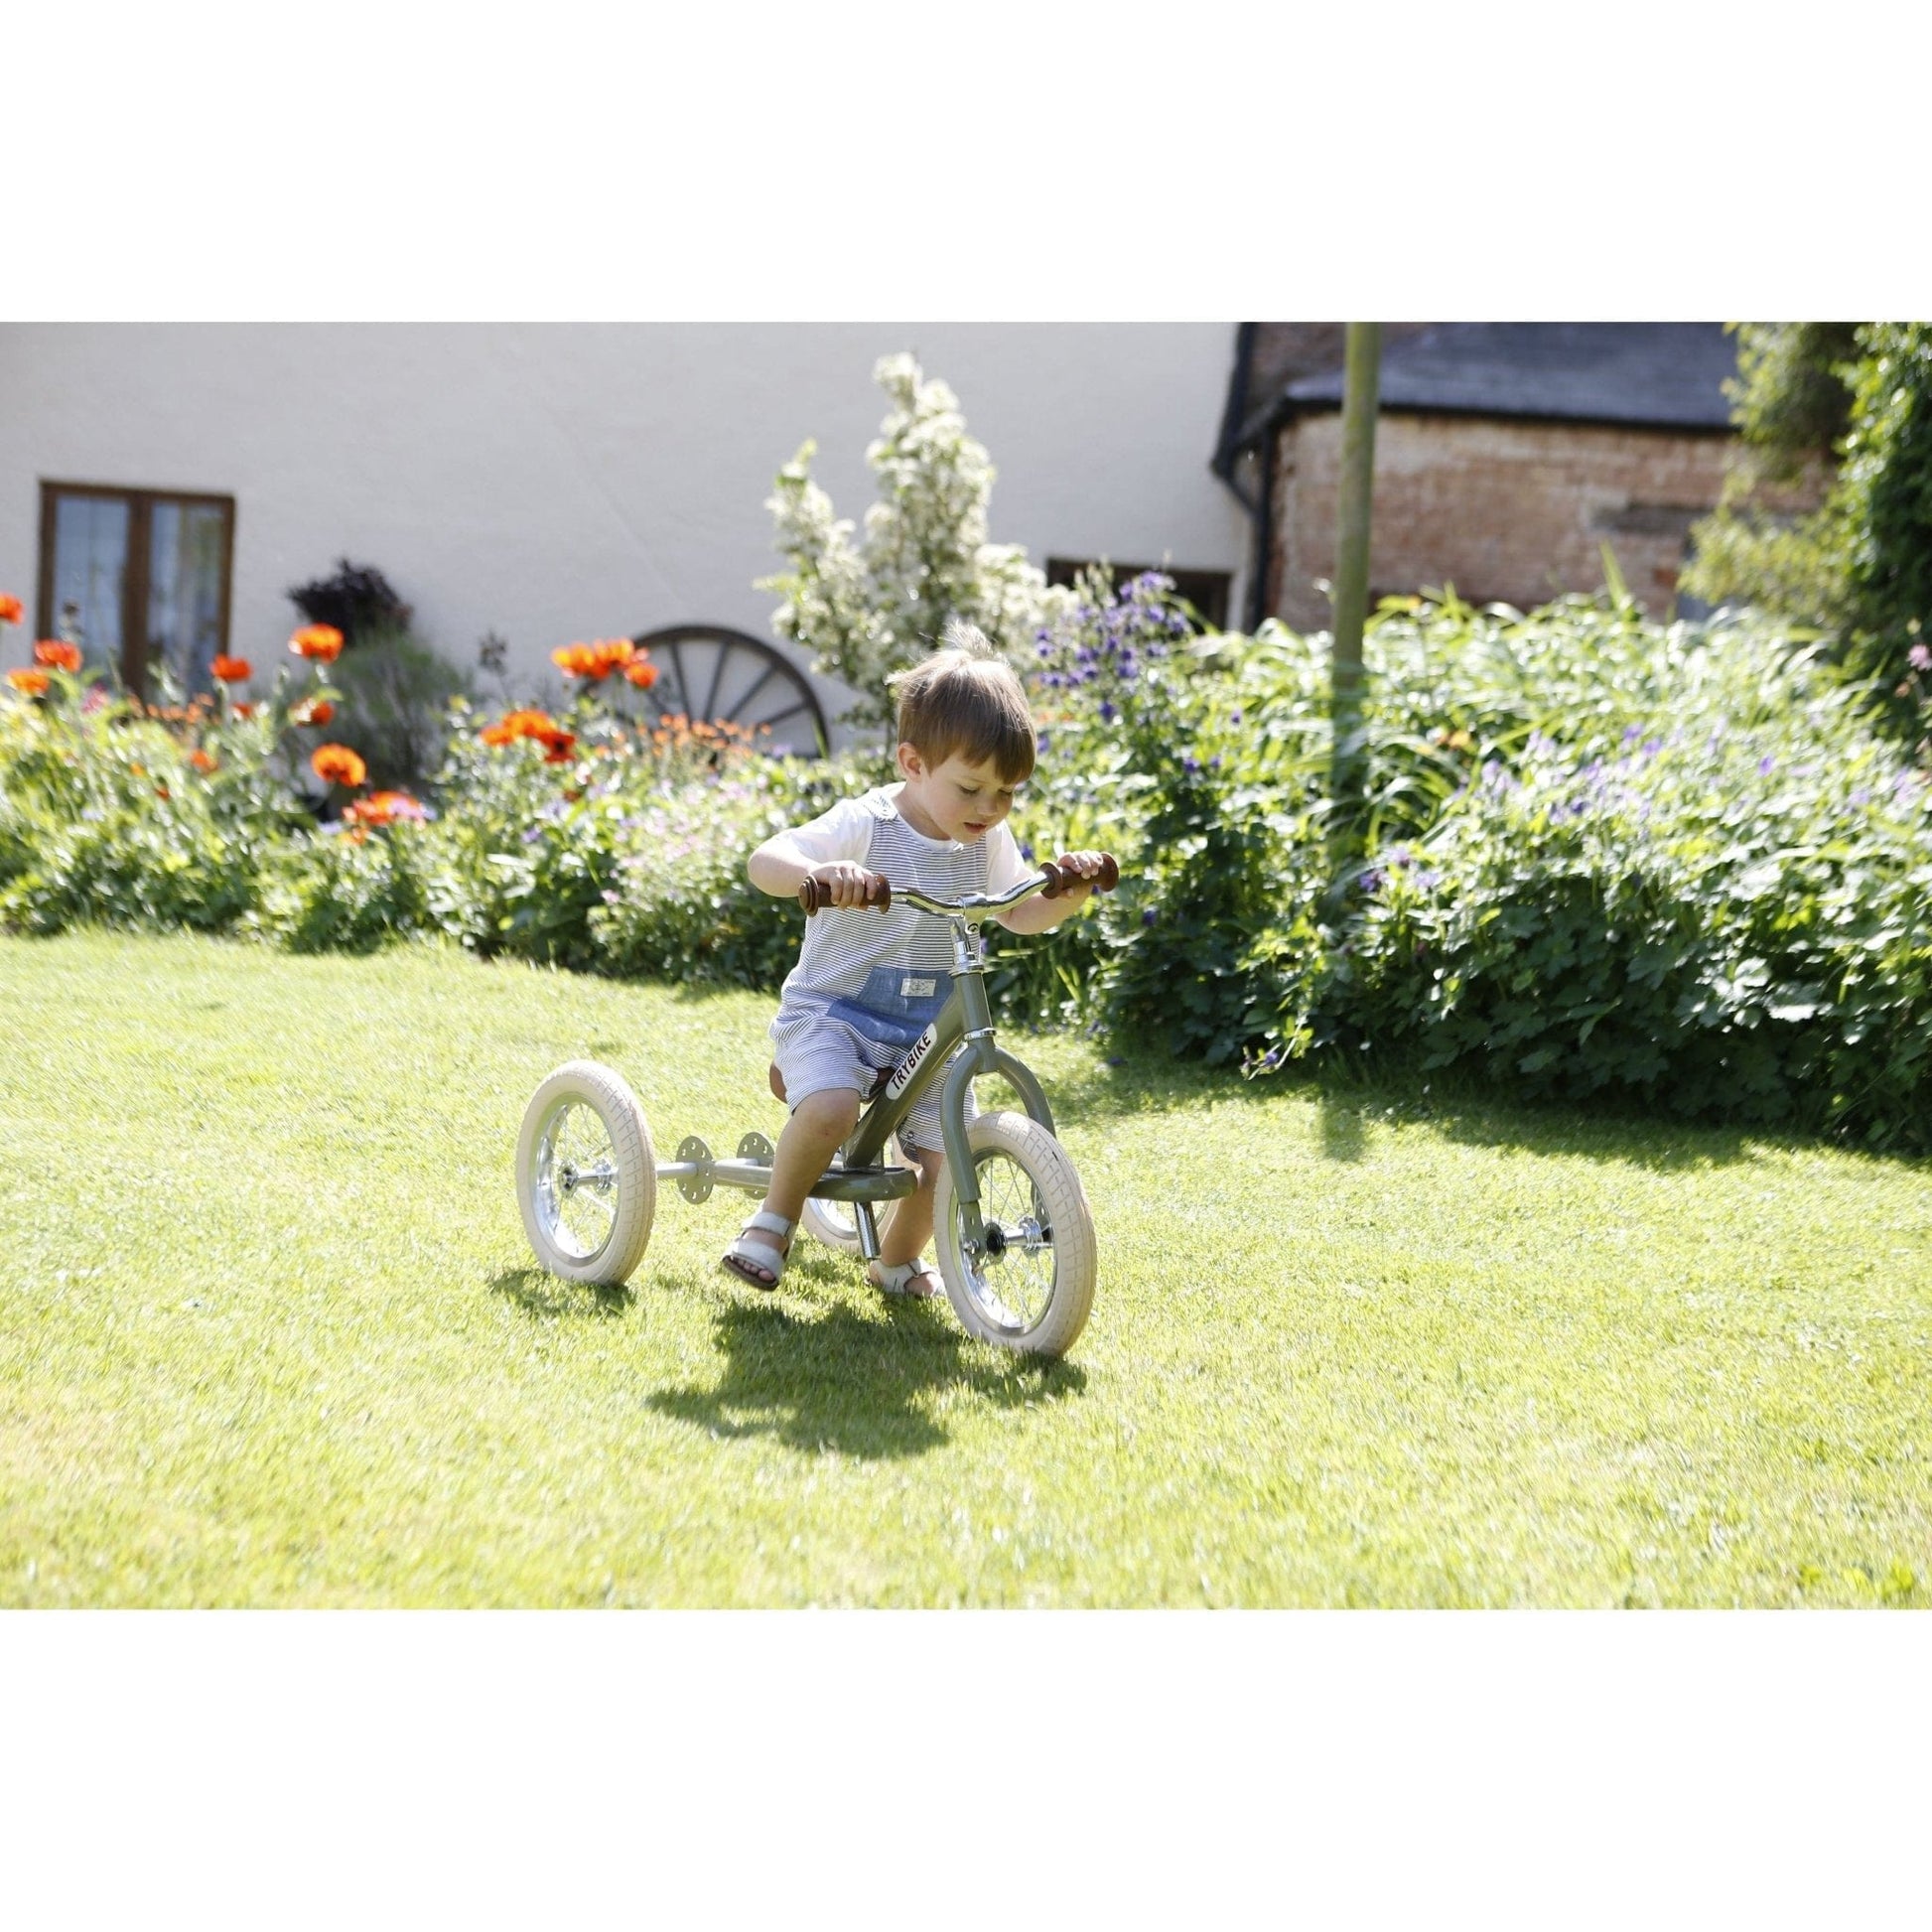 boy riding TryBike - Steel 2 in 1 Balance Trike Bike - Vintage Green in garden